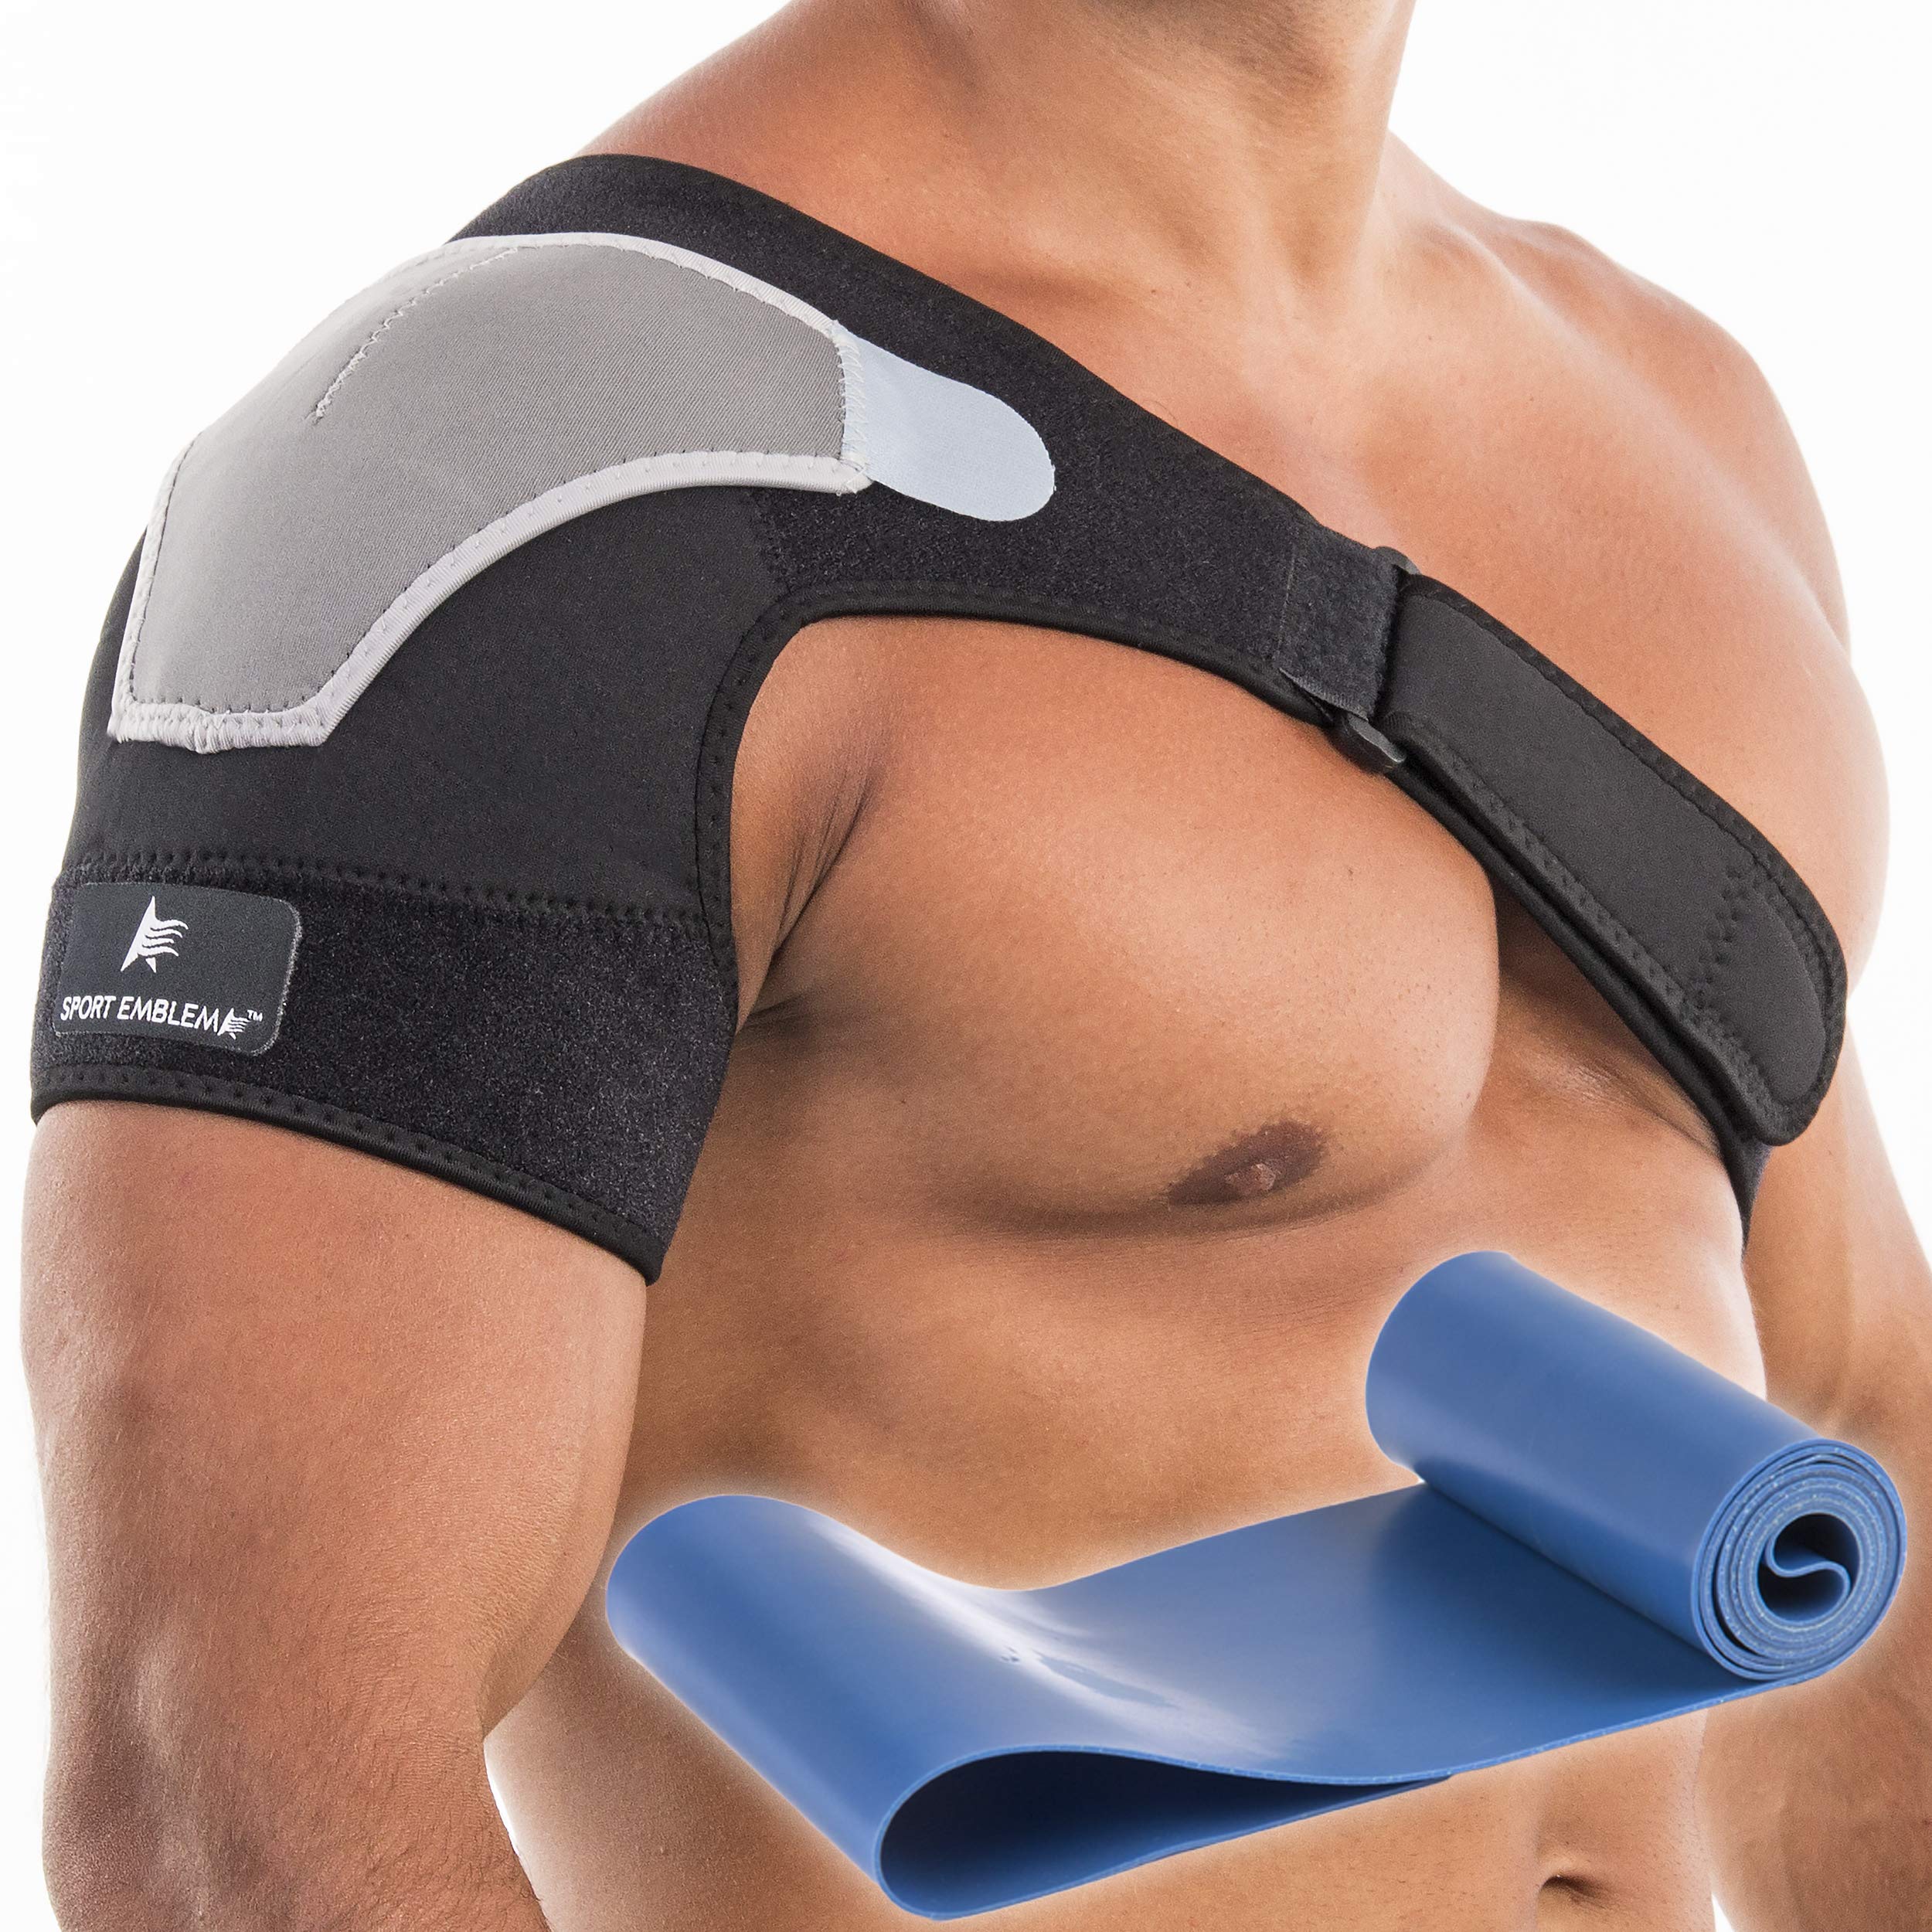  Shoulder Stability Support Shoulder Brace Compression Support  Shoulder Stability Support Brace Shoulder Immobilizer Rotator Cuff Brace L  Shoulder Corrector Belt